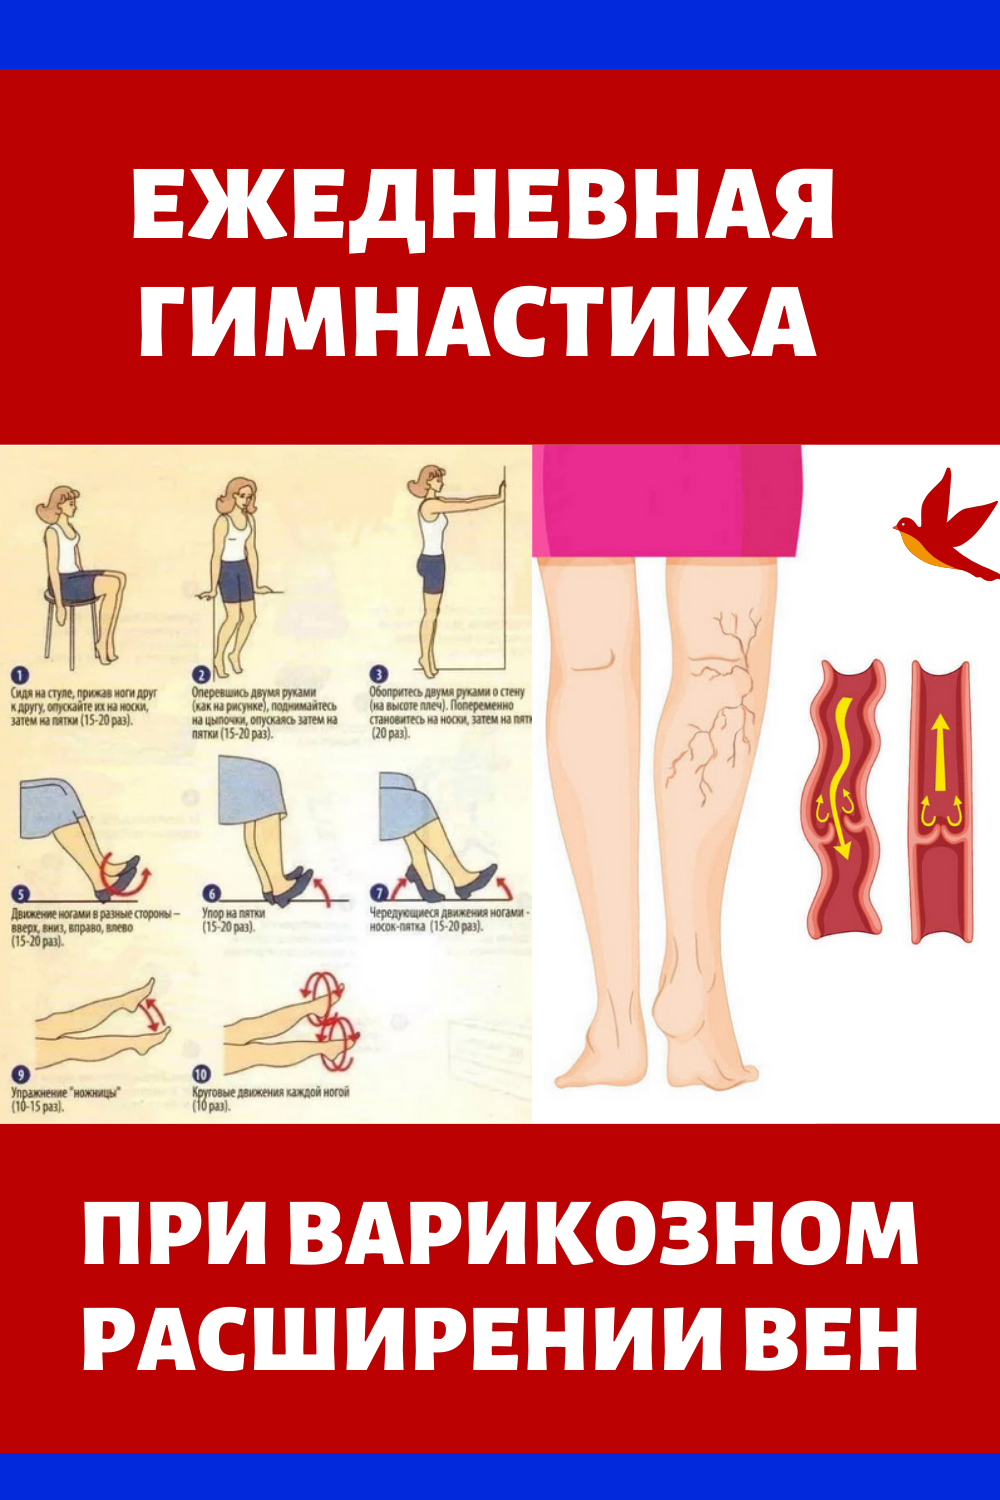 Варикозного расширения вен нижних конечностей у женщин. Упражнения притварикозе. Упражнения при варикозе. Упражнения для ног при варикозе. Гимнастика при варикозном расширении вен.